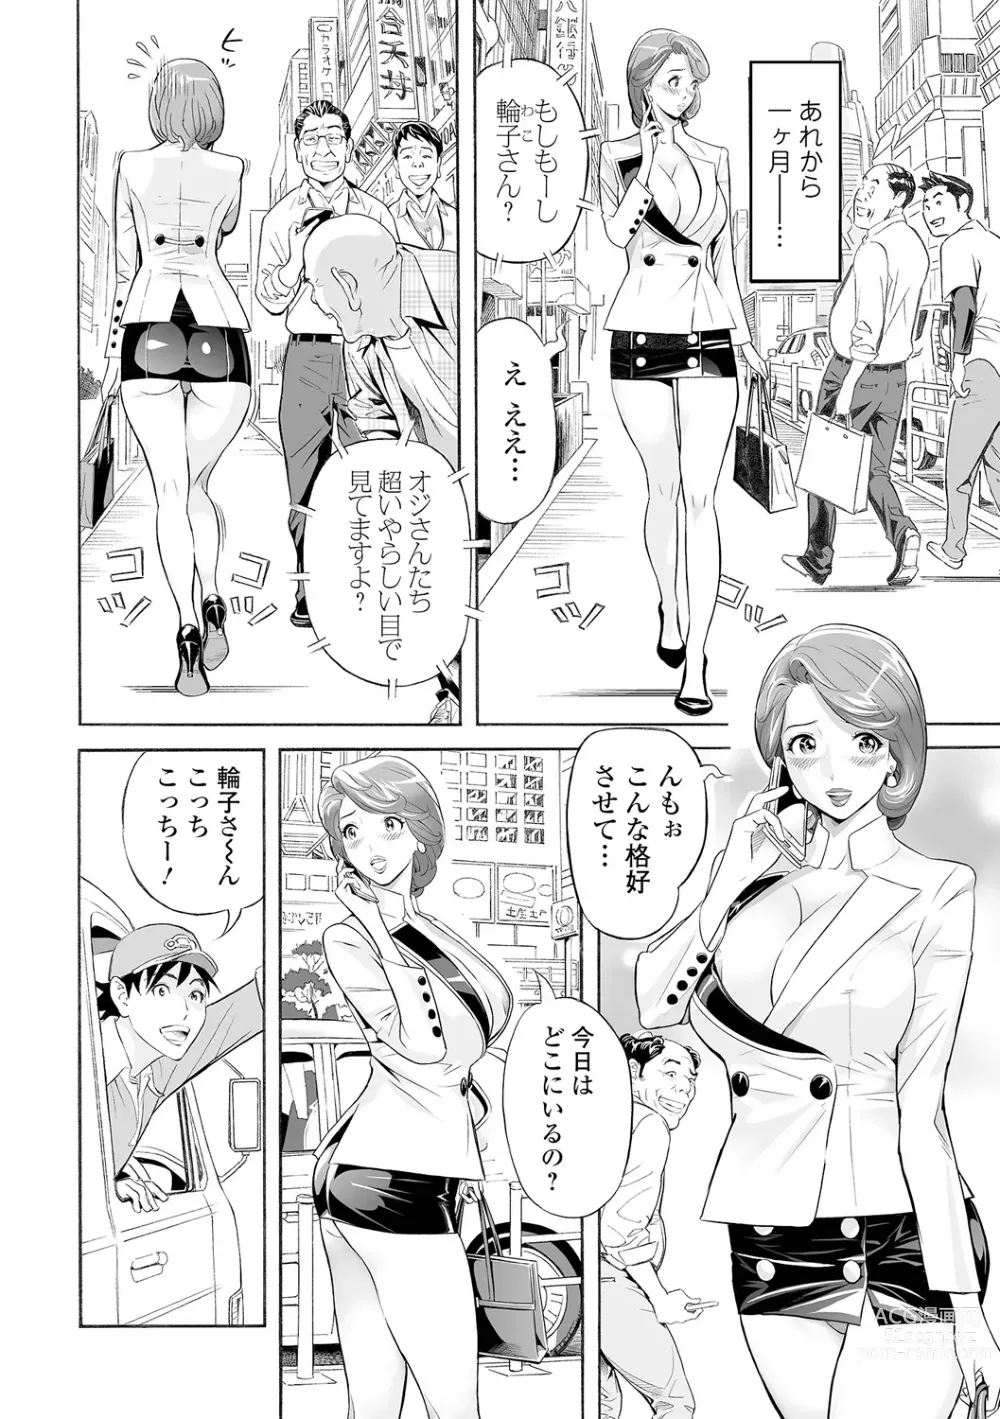 Page 192 of manga Elegant Erogant